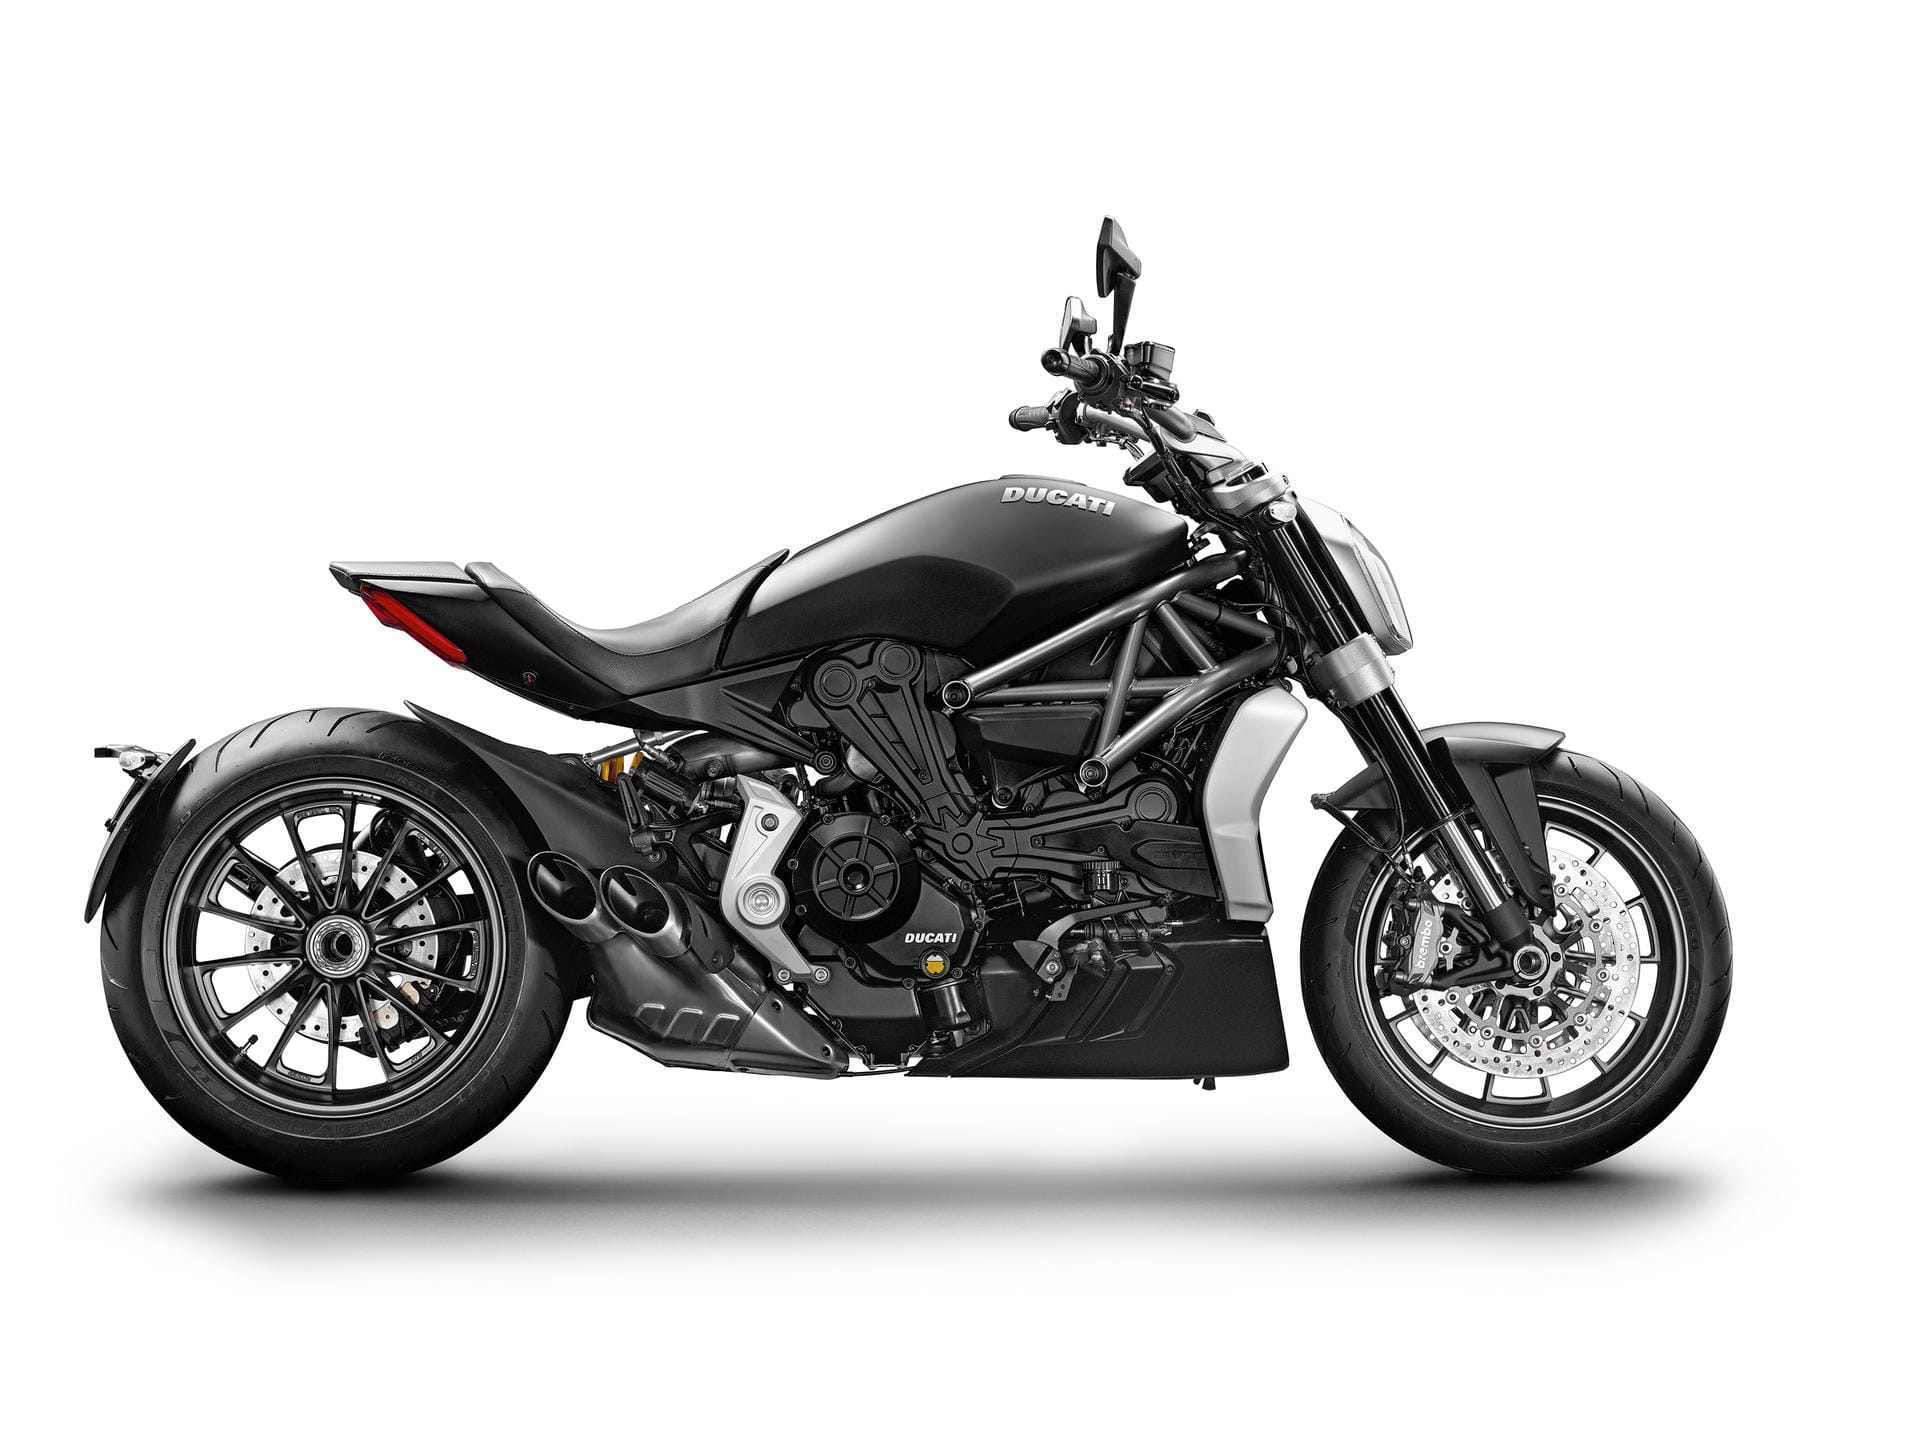 Heavy Metal: Die XDiavel von Ducati wiegt 247 Kilogramm und leistet 156 PS.